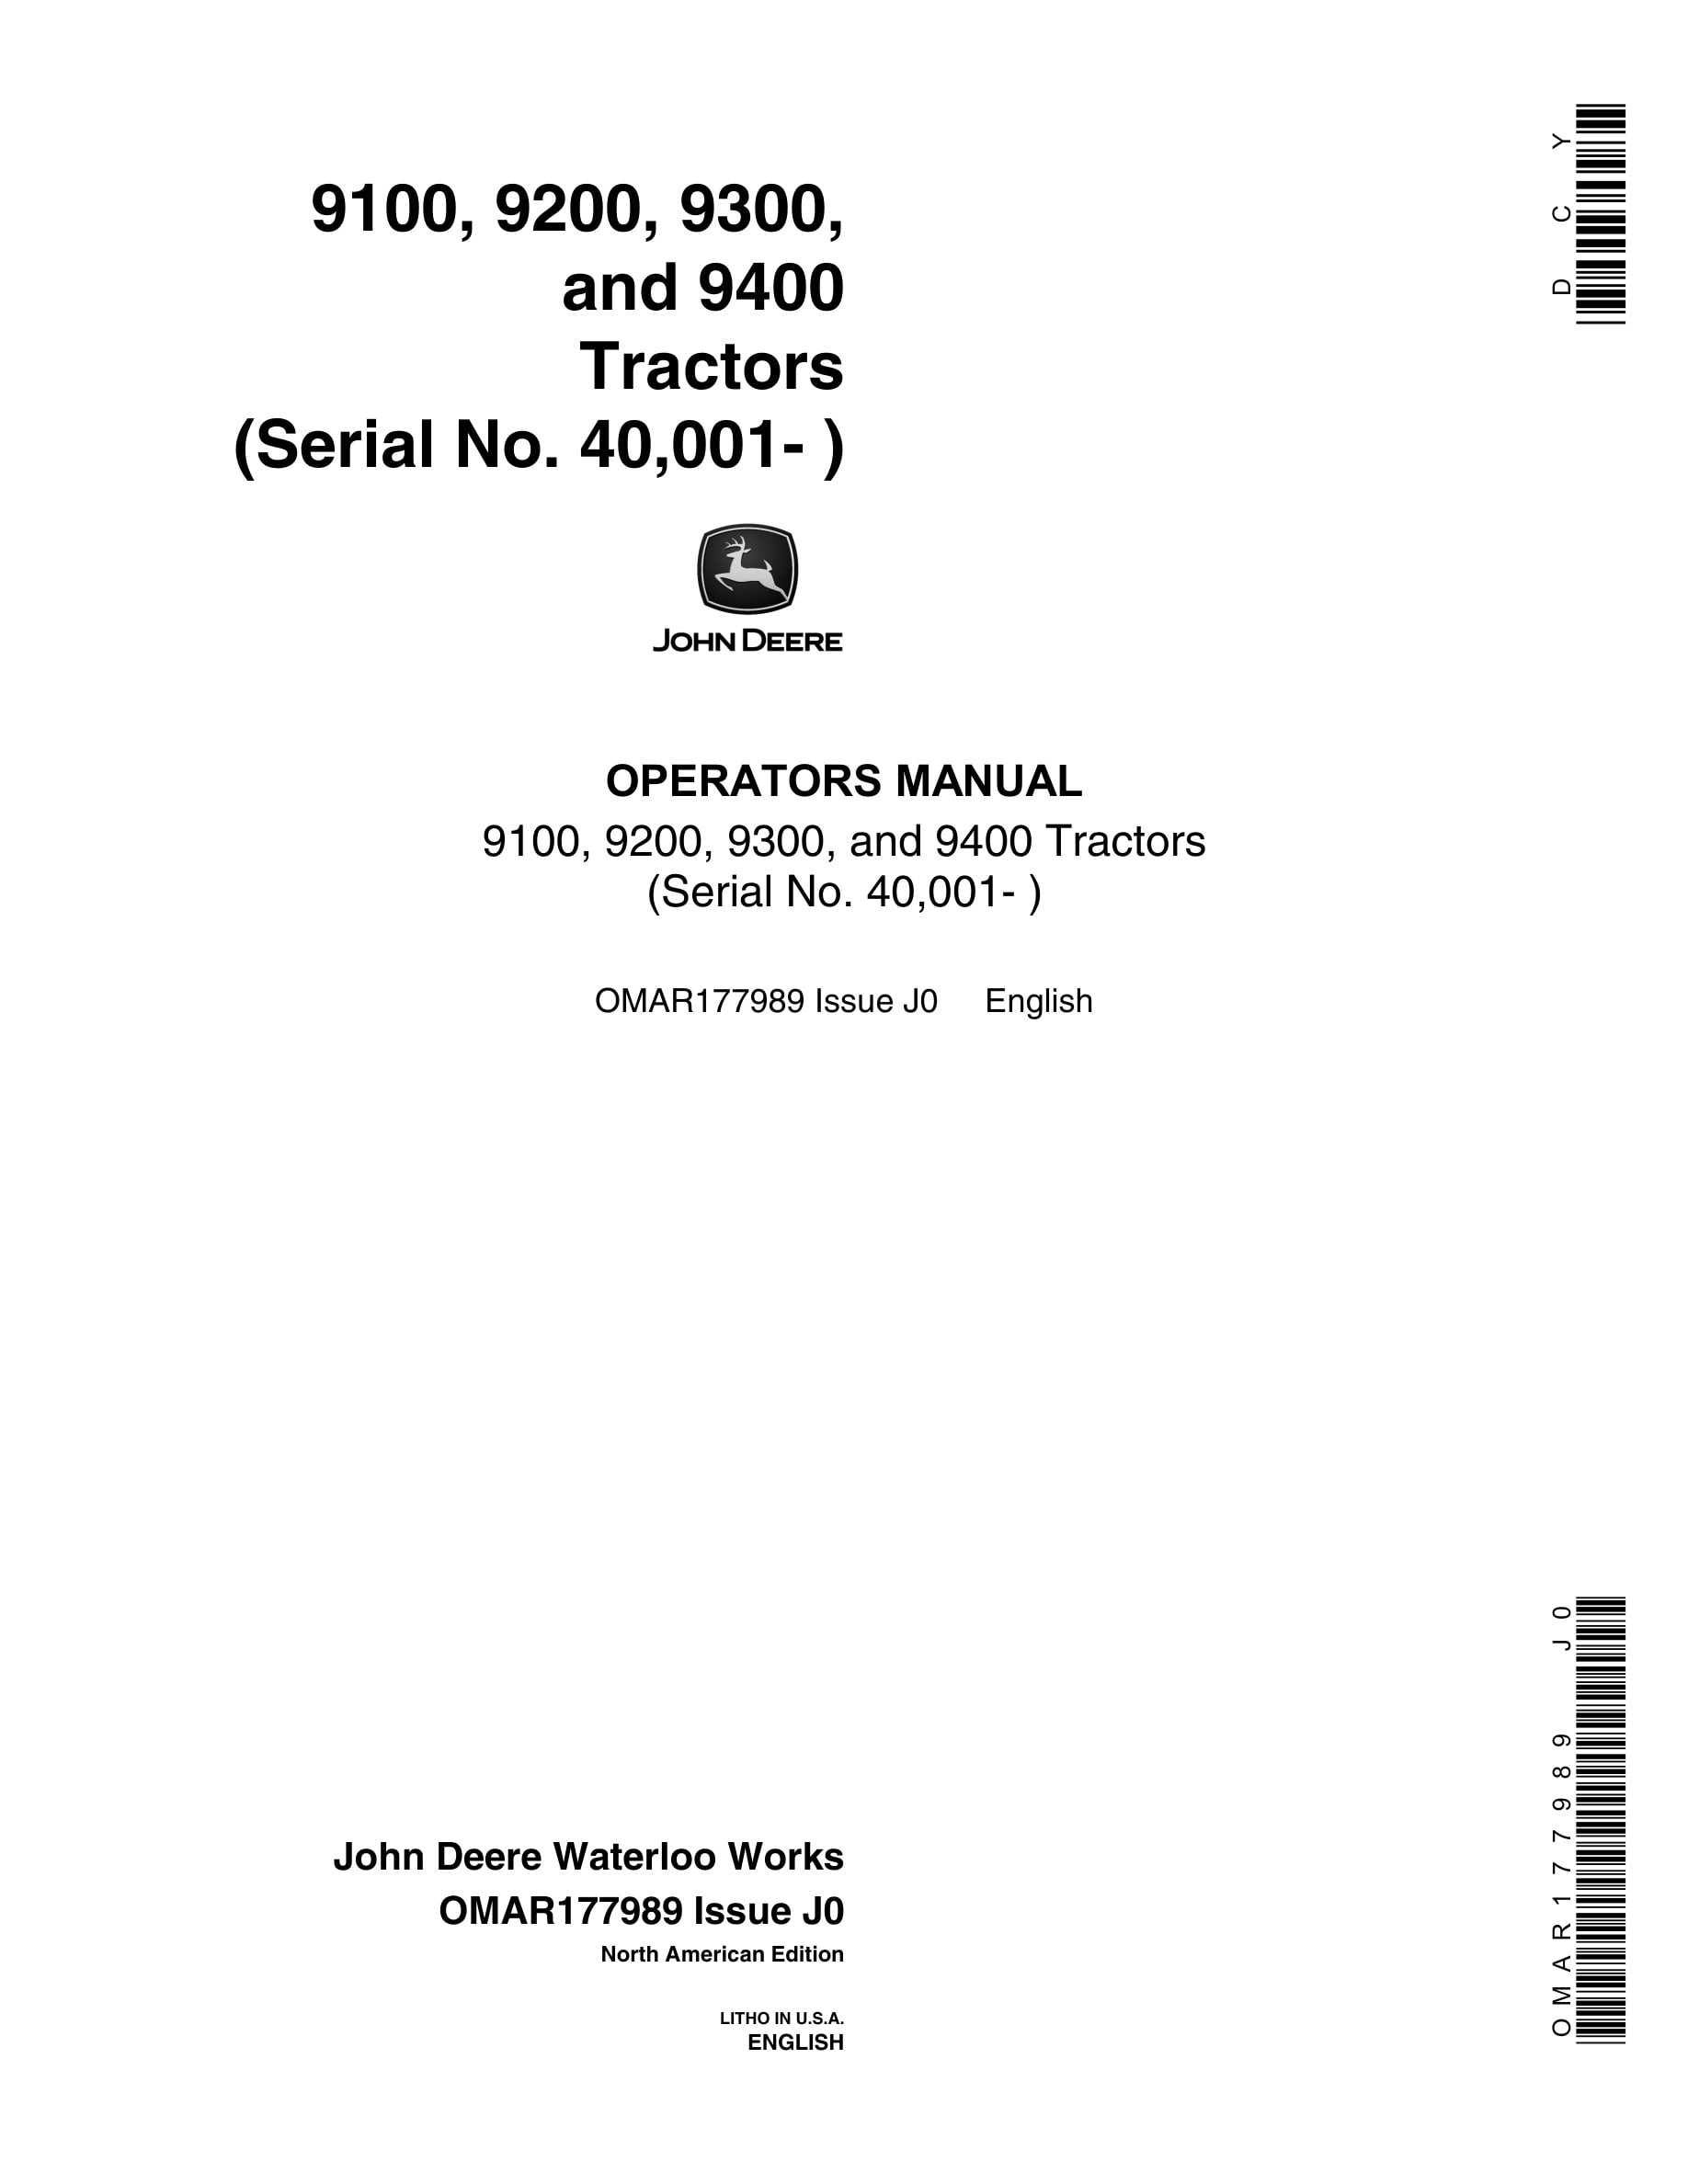 John Deere 9100, 9200, 9300, and 9400 Tractor Operator Manual OMAR177989-1